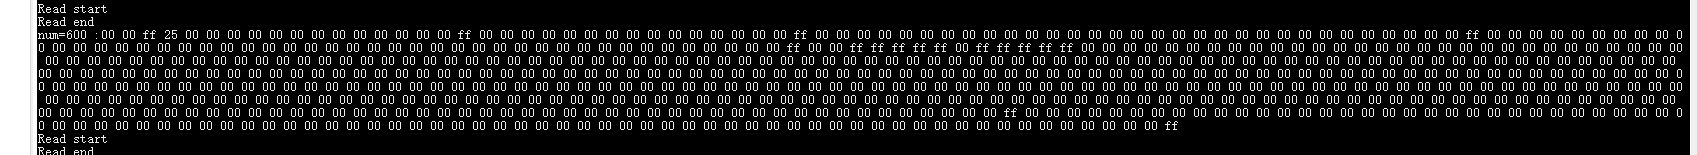 Linux 驱动像单片机一样读取一帧dmx512串口数据